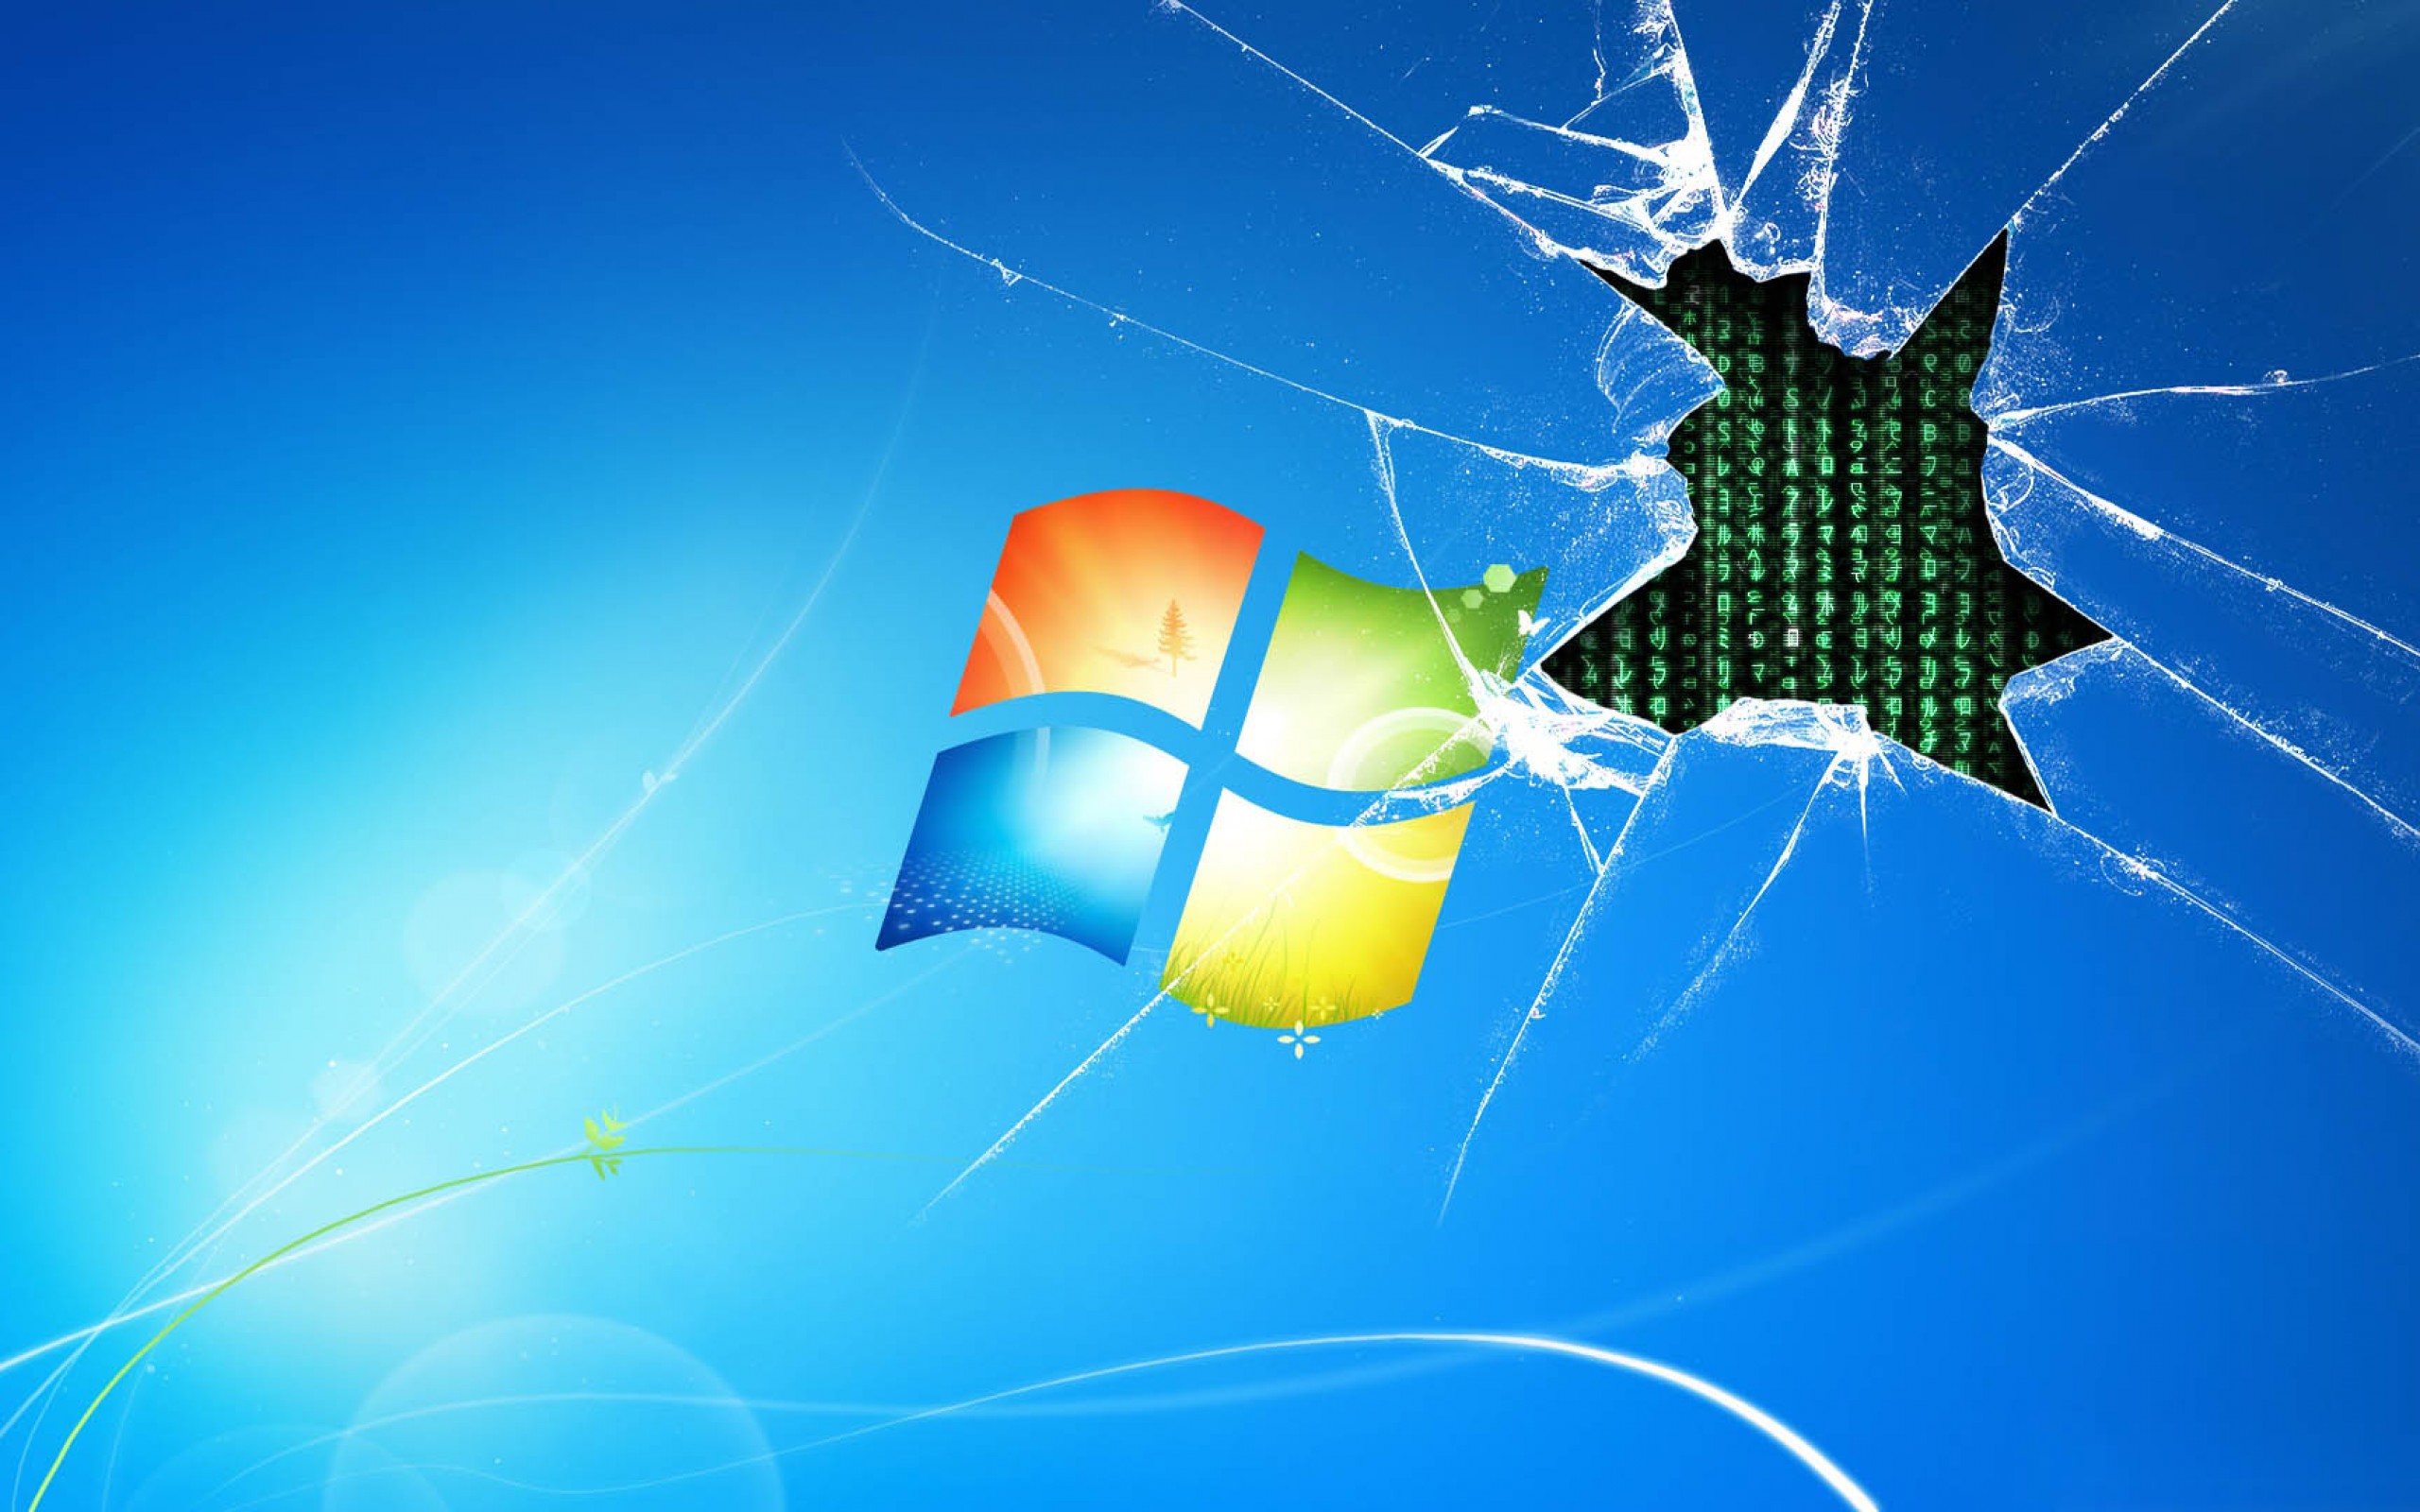 Broken Windows 7 Wallpaper - Bạn đang tìm kiếm một hình nền Windows 7 độc đáo và đầy sáng tạo? Hãy khám phá ngay những hình ảnh Broken Windows 7 Wallpaper, bạn sẽ có được một wallpaper hoàn toàn khác biệt và độc đáo để trang trí cho máy tính của mình.